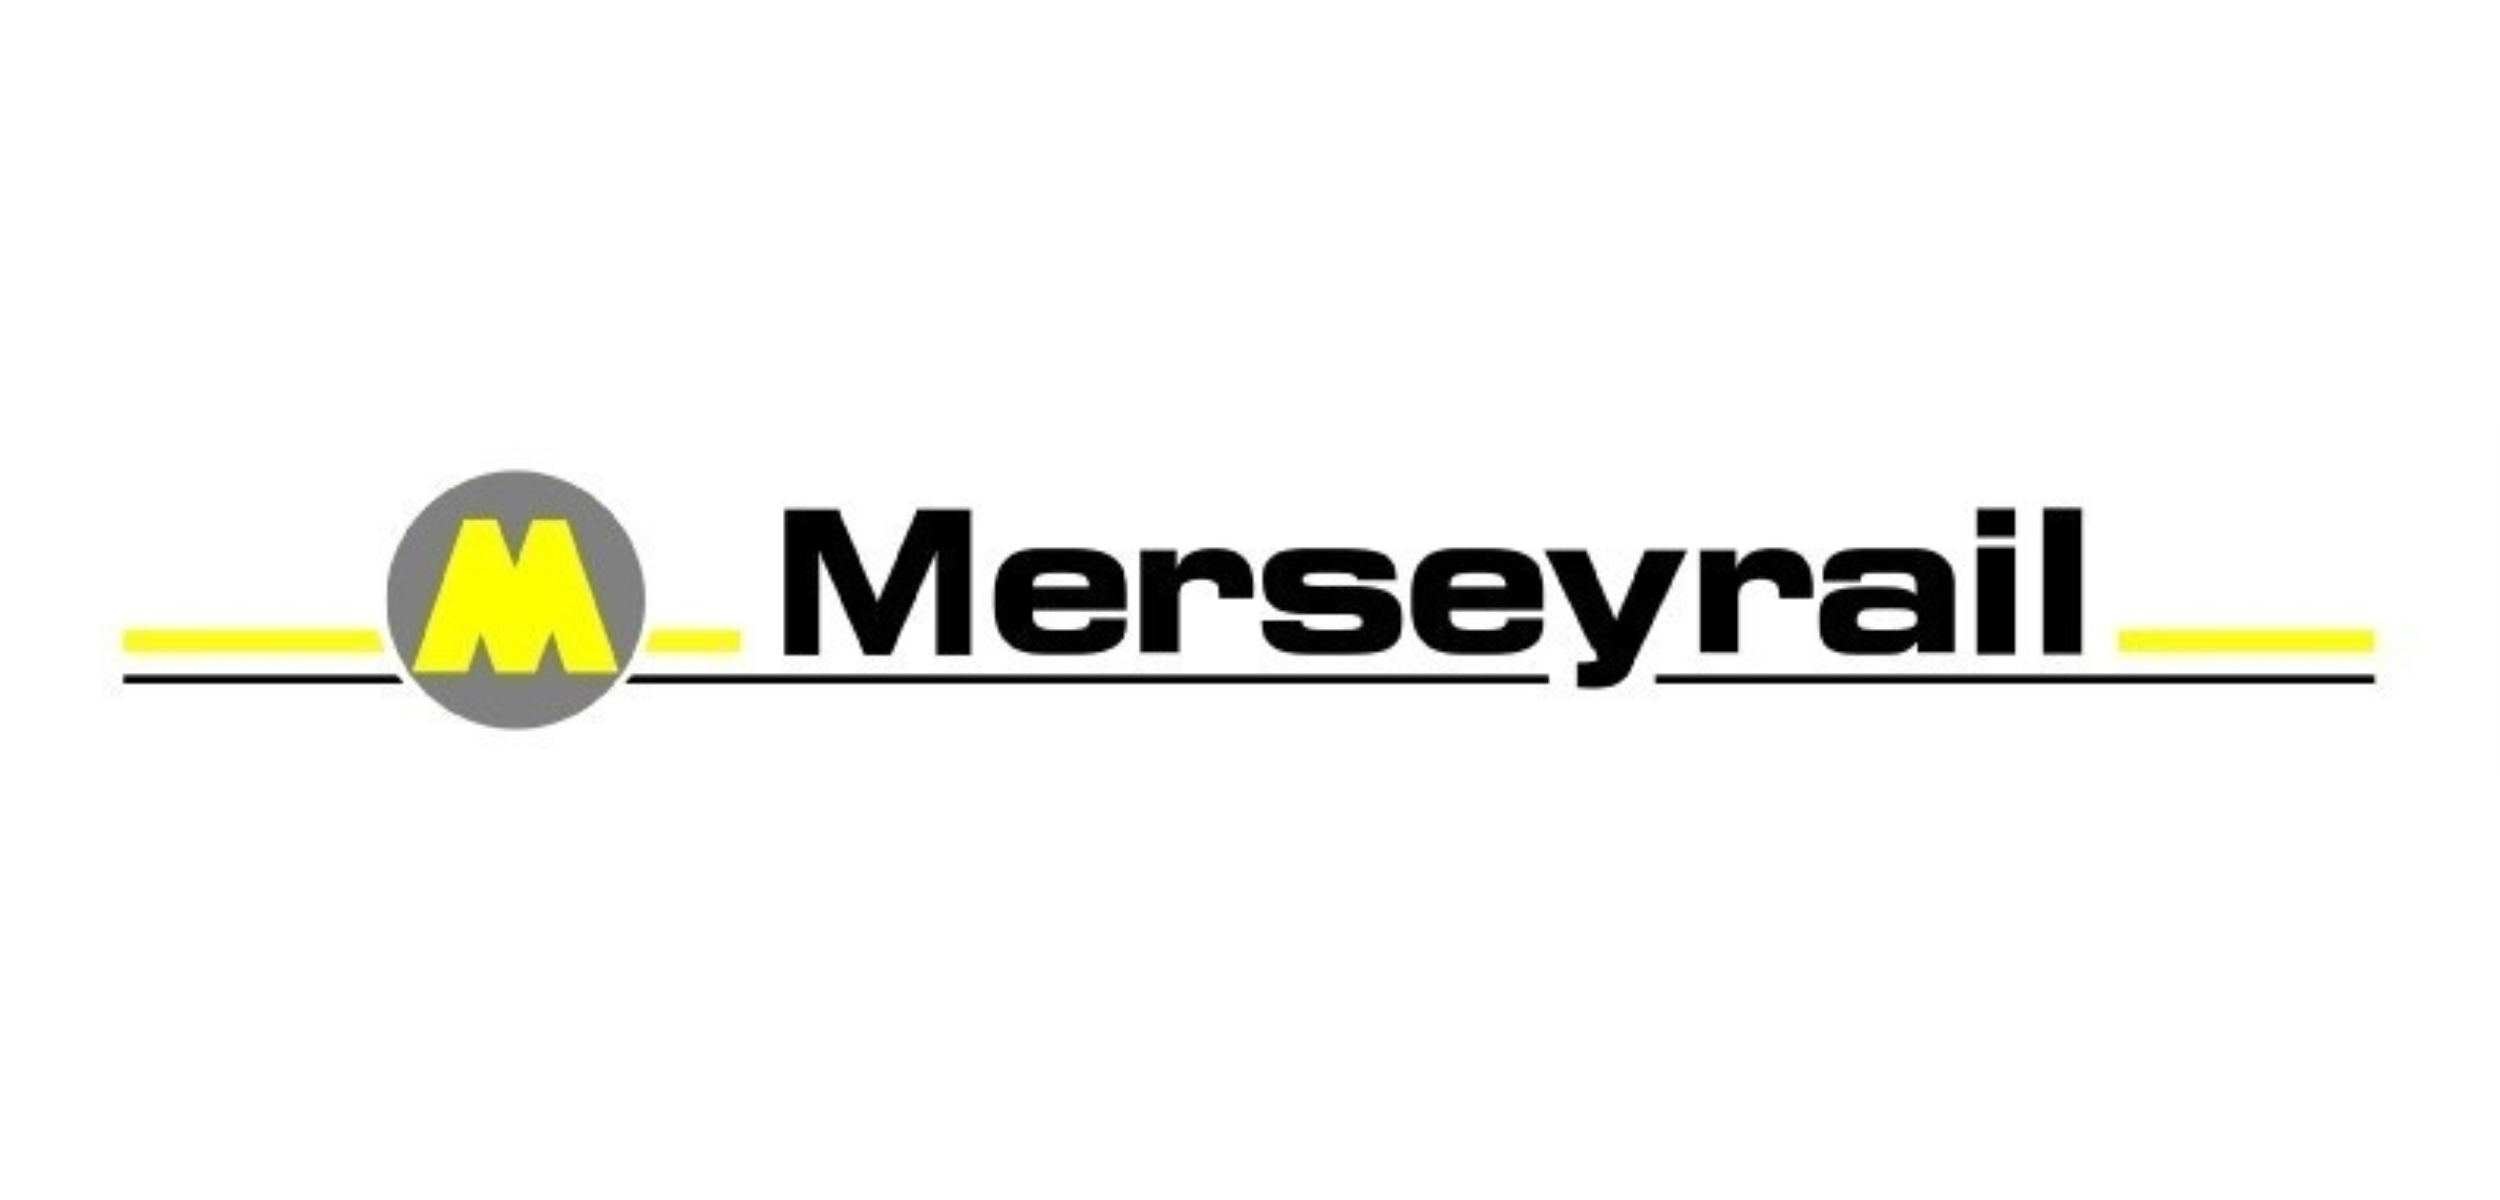 Merseyrail P&S logo (2500 x 1200 px)